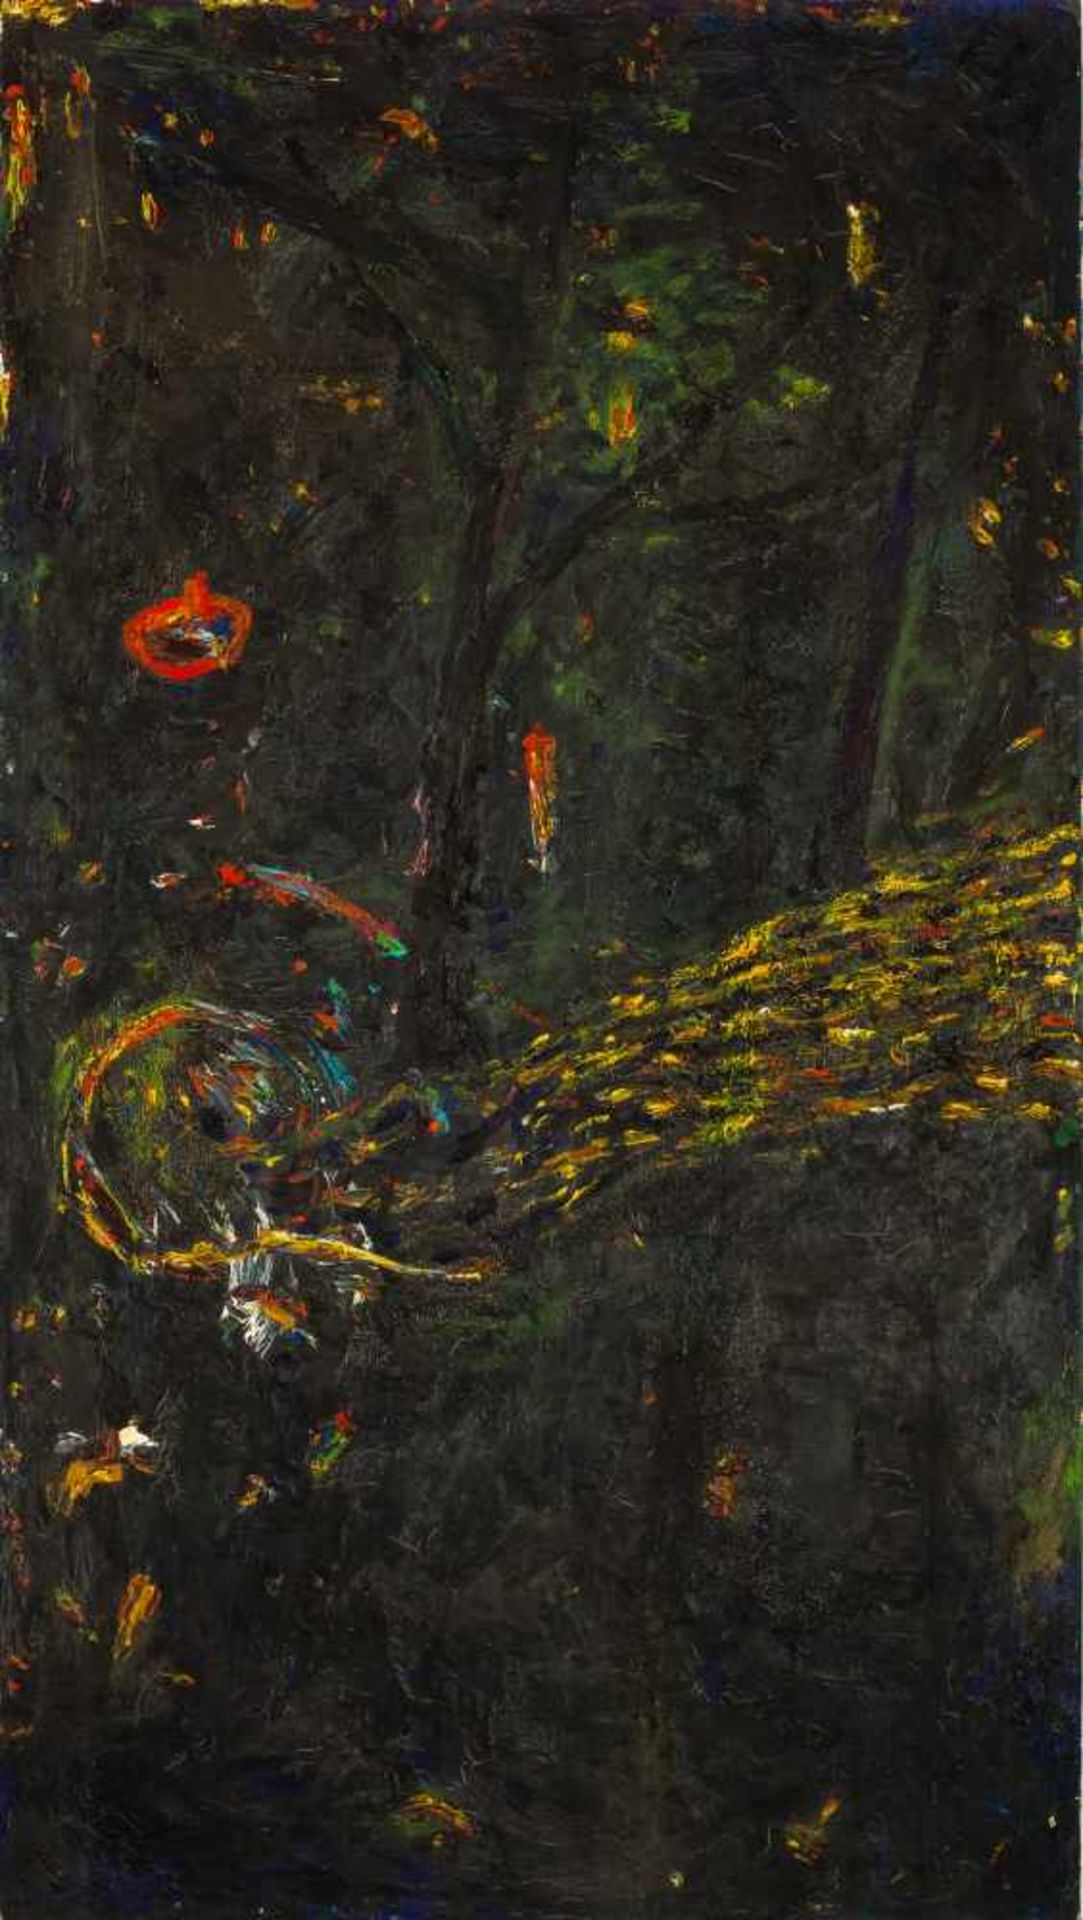 Gunter Damisch (hs art)Steyr 1958 - 2016 WienIm Dunkeln unter BäumenÖl auf Leinwand / oil on